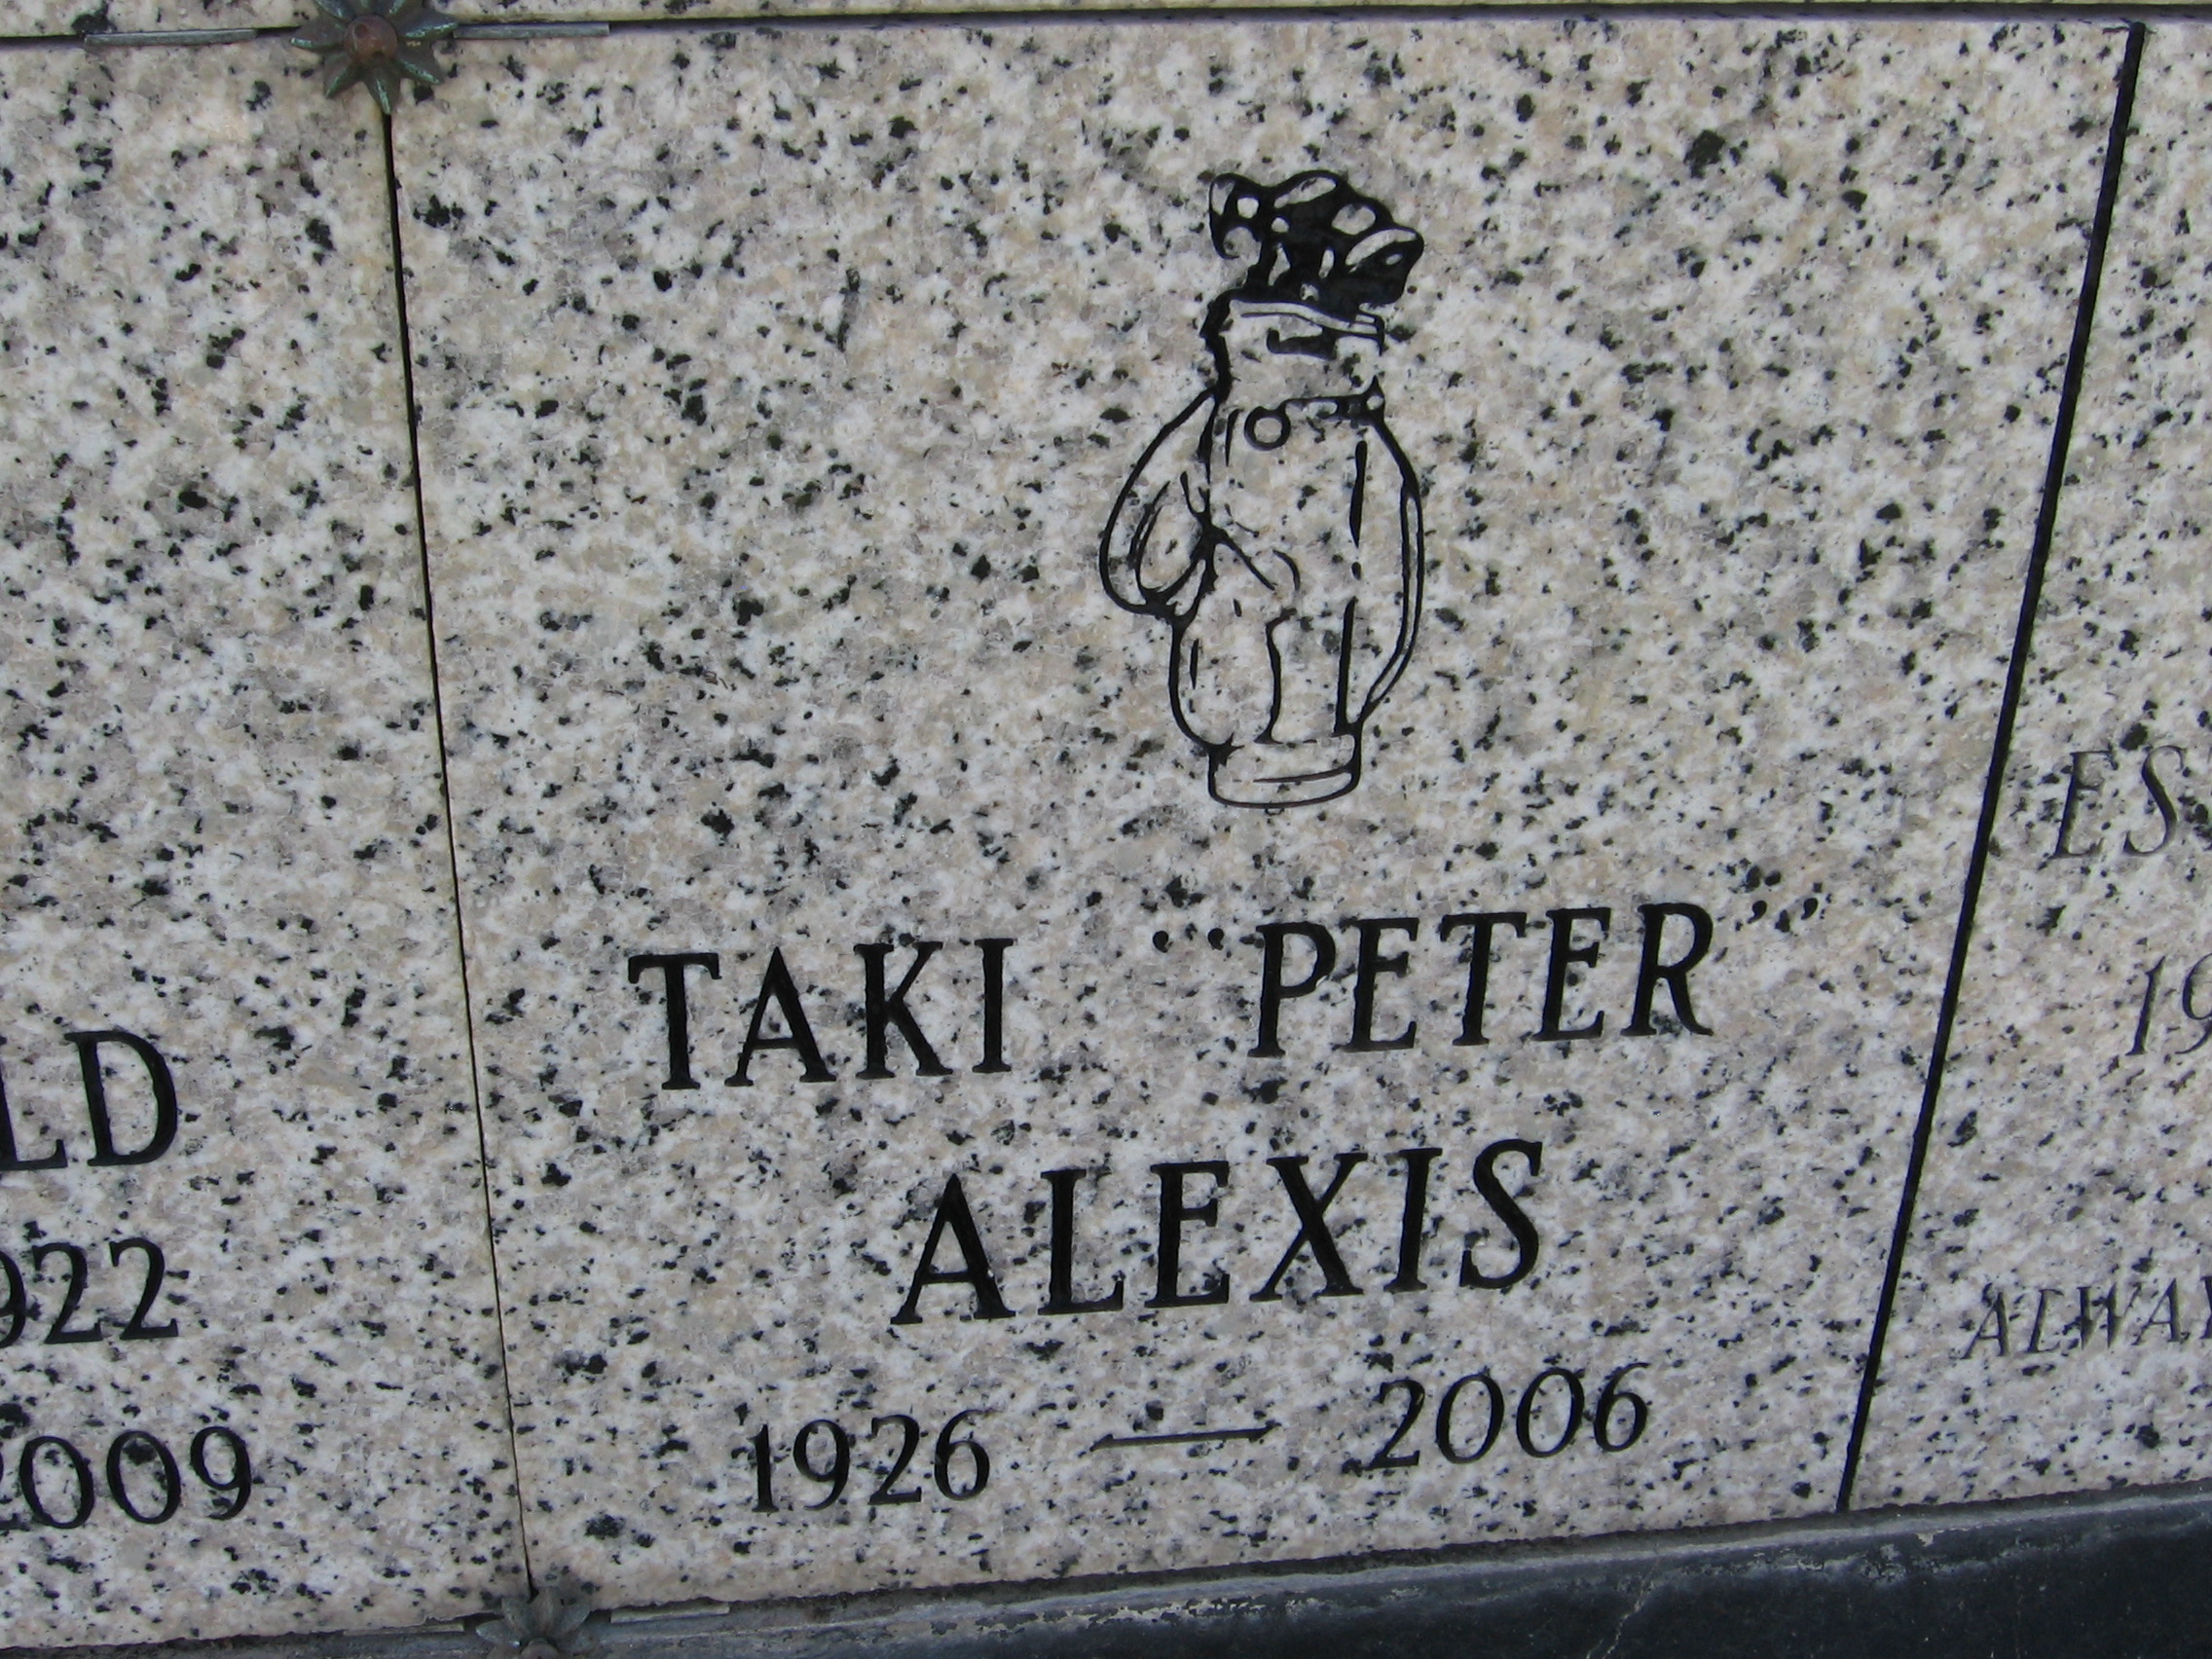 Taki "Peter" Alexis